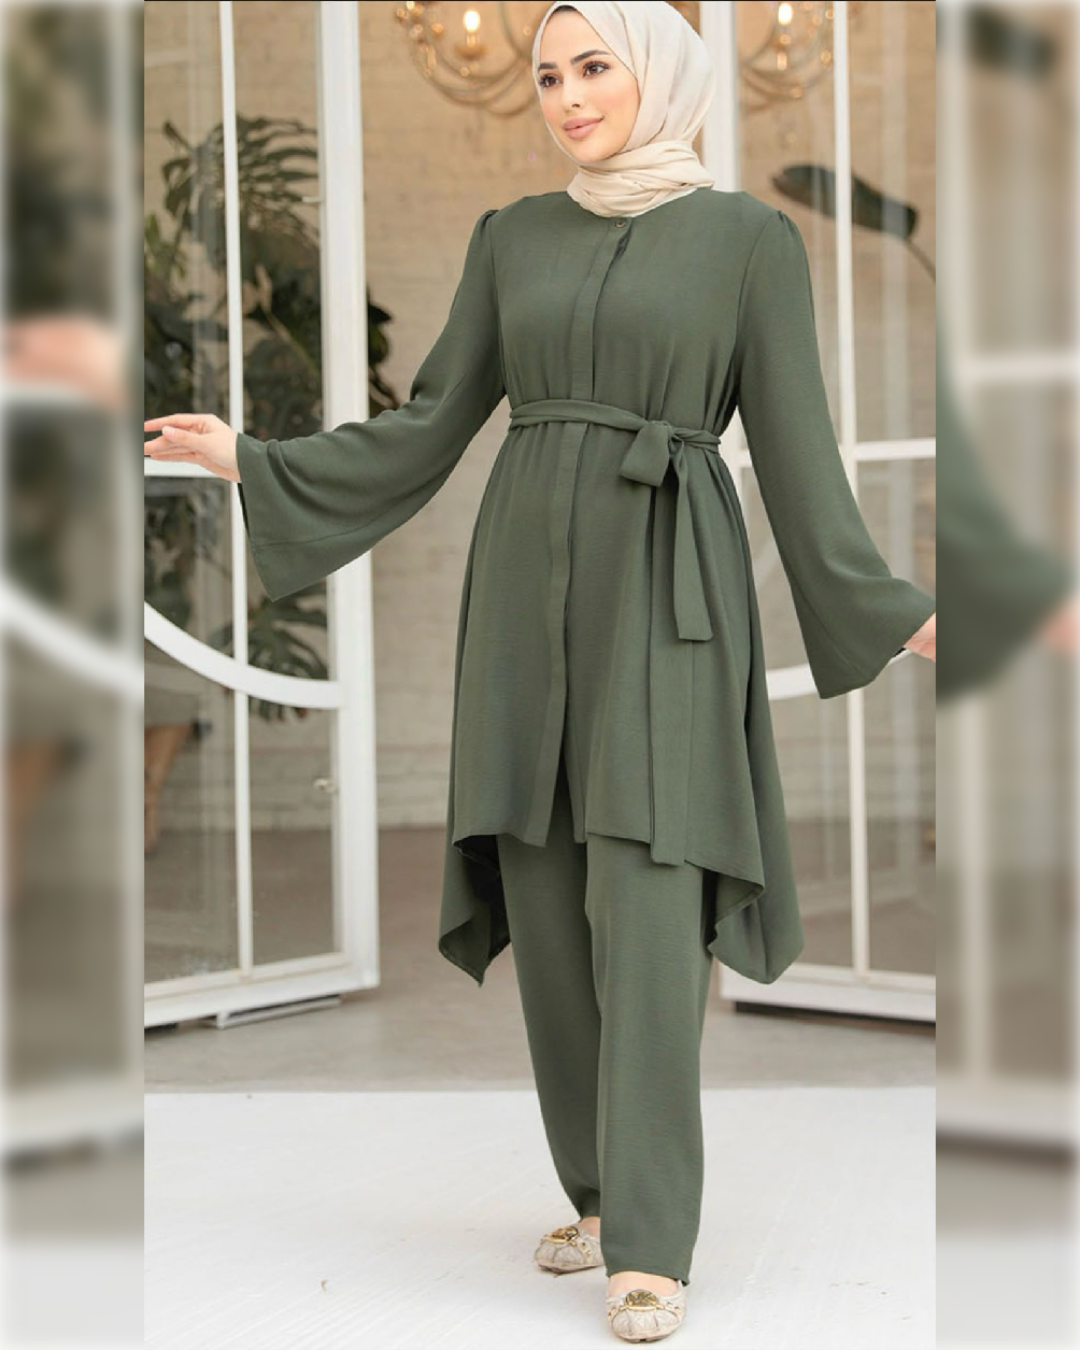 Sama Casual Aerobin 2-Pieces Outfit in Green Shade طقم ساما الصيفي من نسيج الأيروبين مكون من قطعتين بأحد درجات الأخضر الجميل